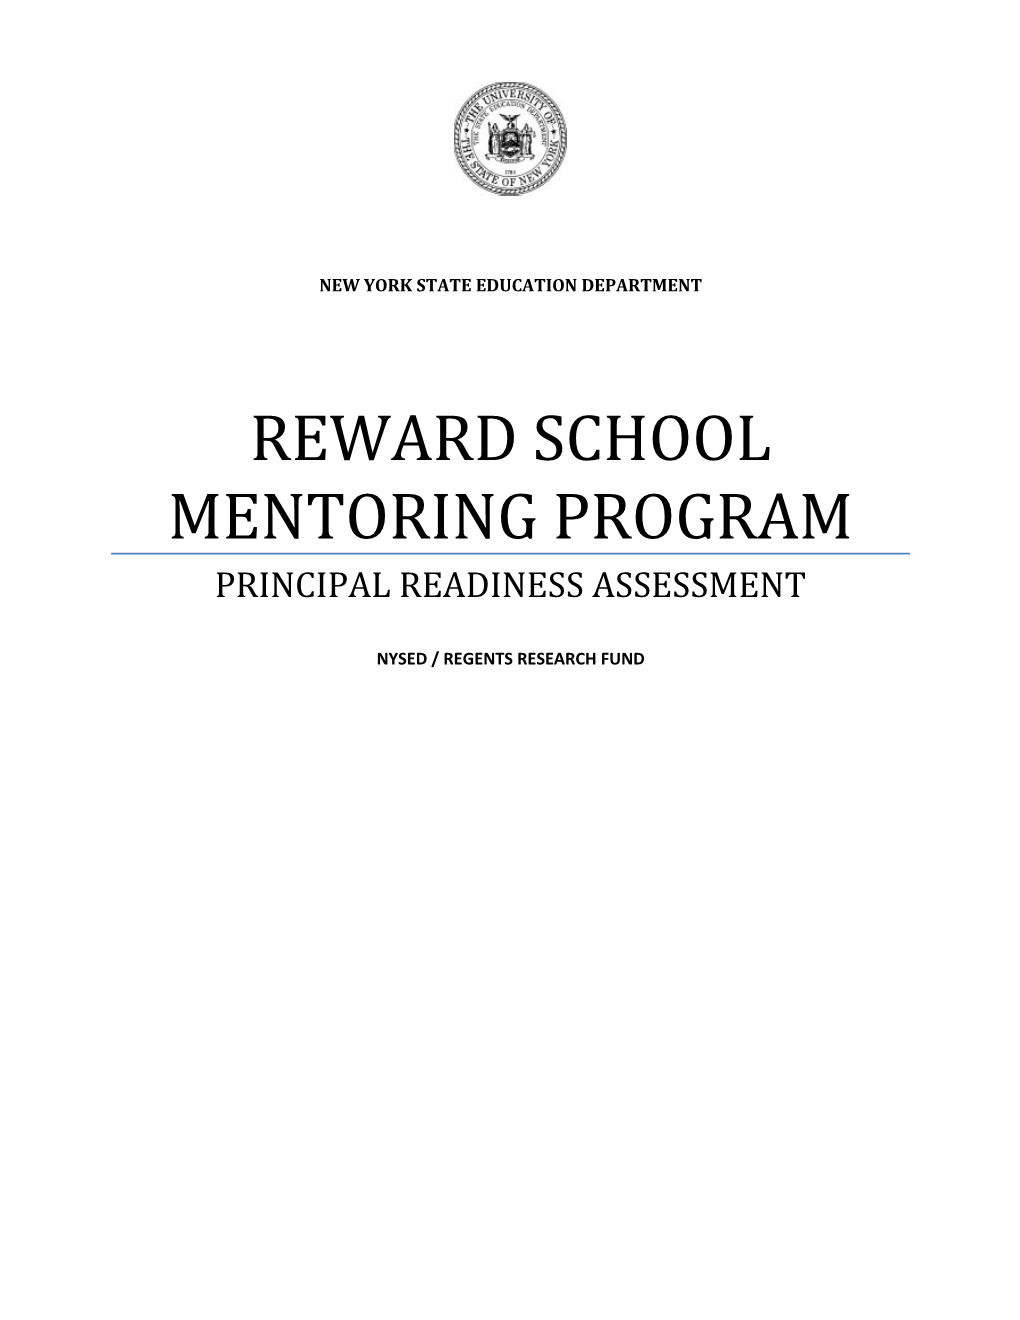 Reward School Mentoring Program